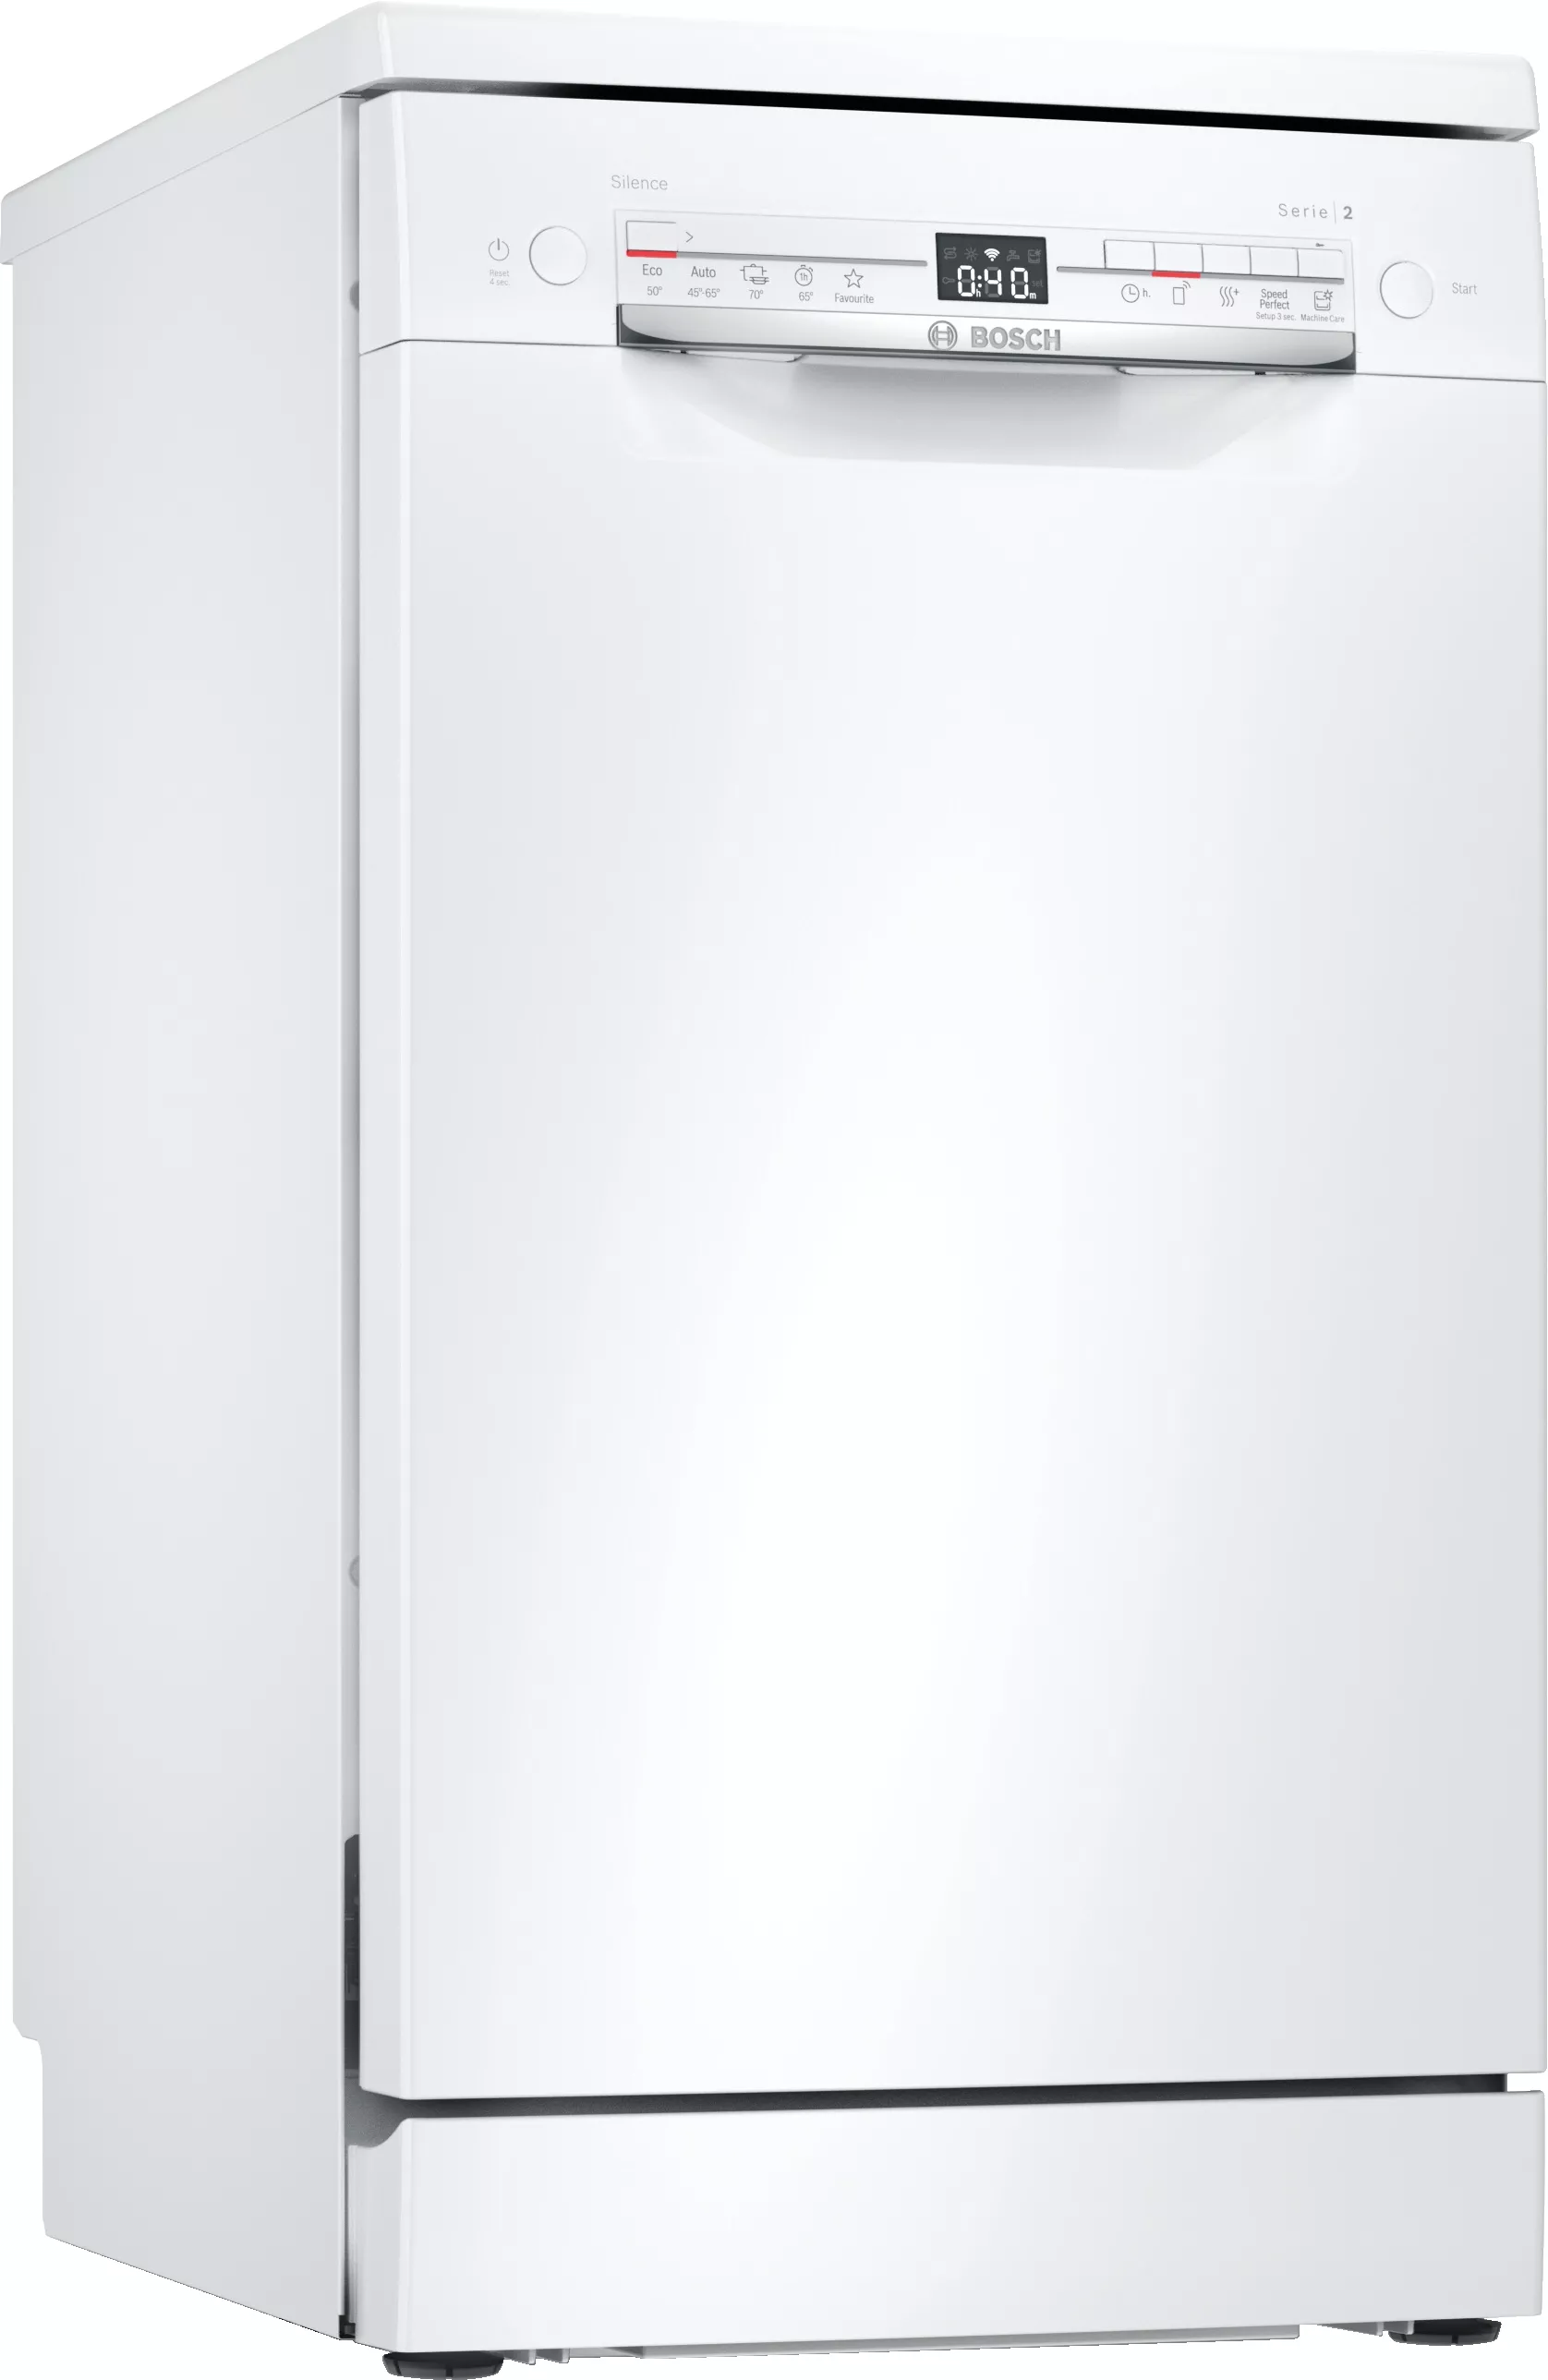 Bosch Serie 2, Freistehender Geschirrspüler, 45 cm, Weiß, SPS2IKW10E